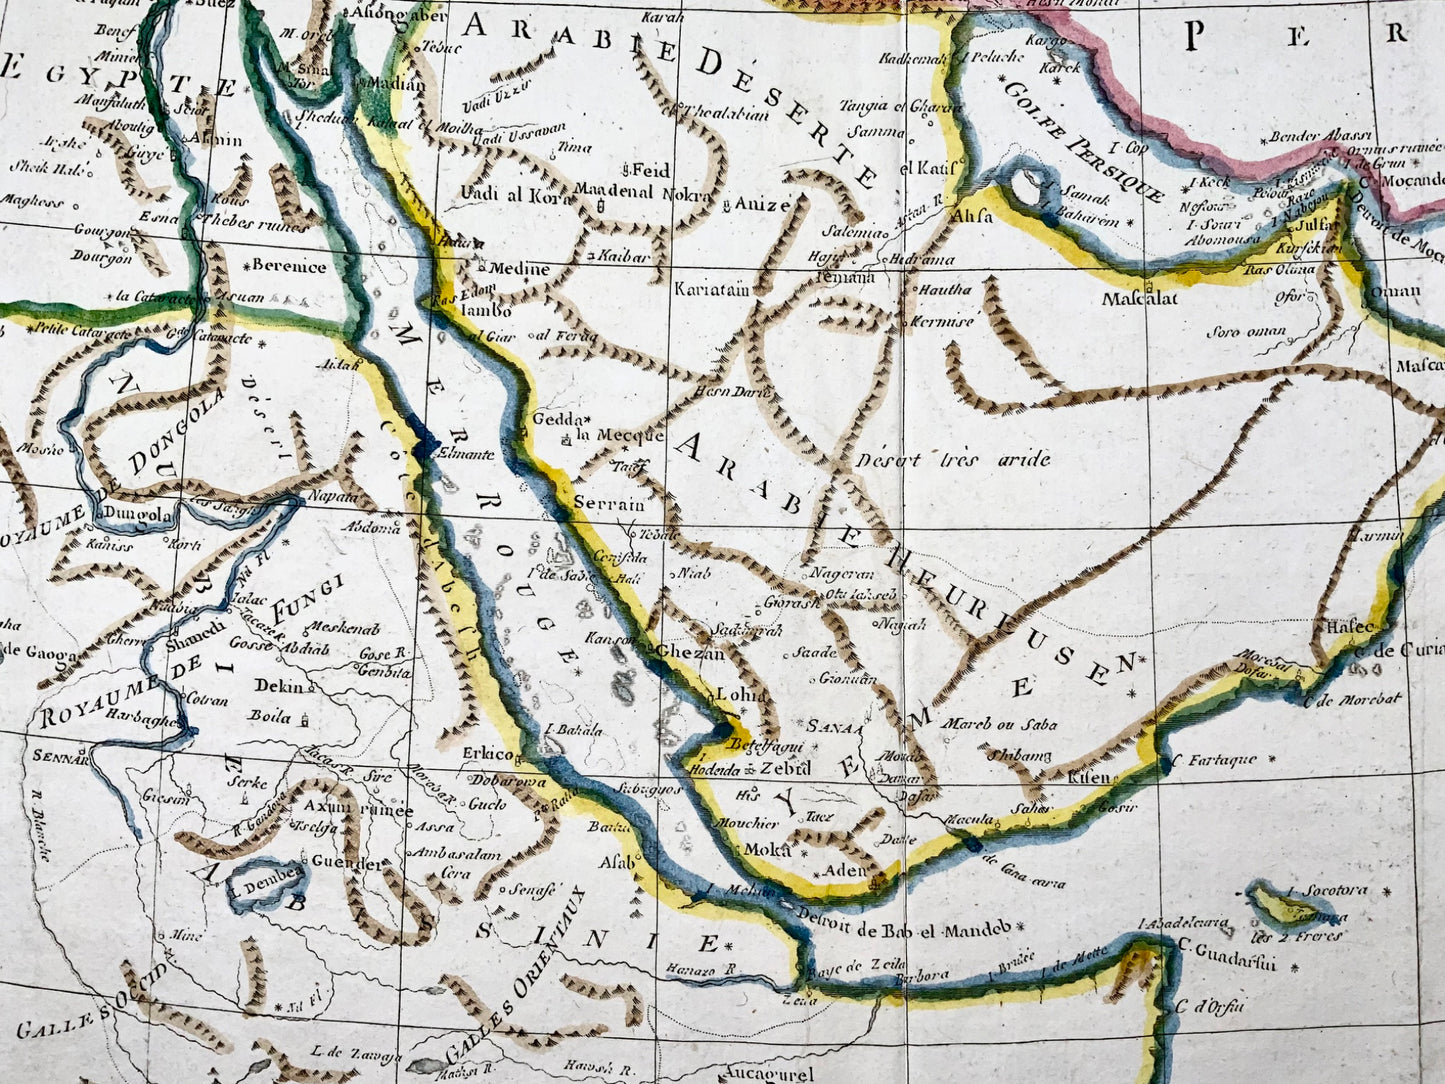 1780 Bonne, mappa del Medio Oriente, Persia, Mar Rosso, Egitto, Nubia colorata a mano